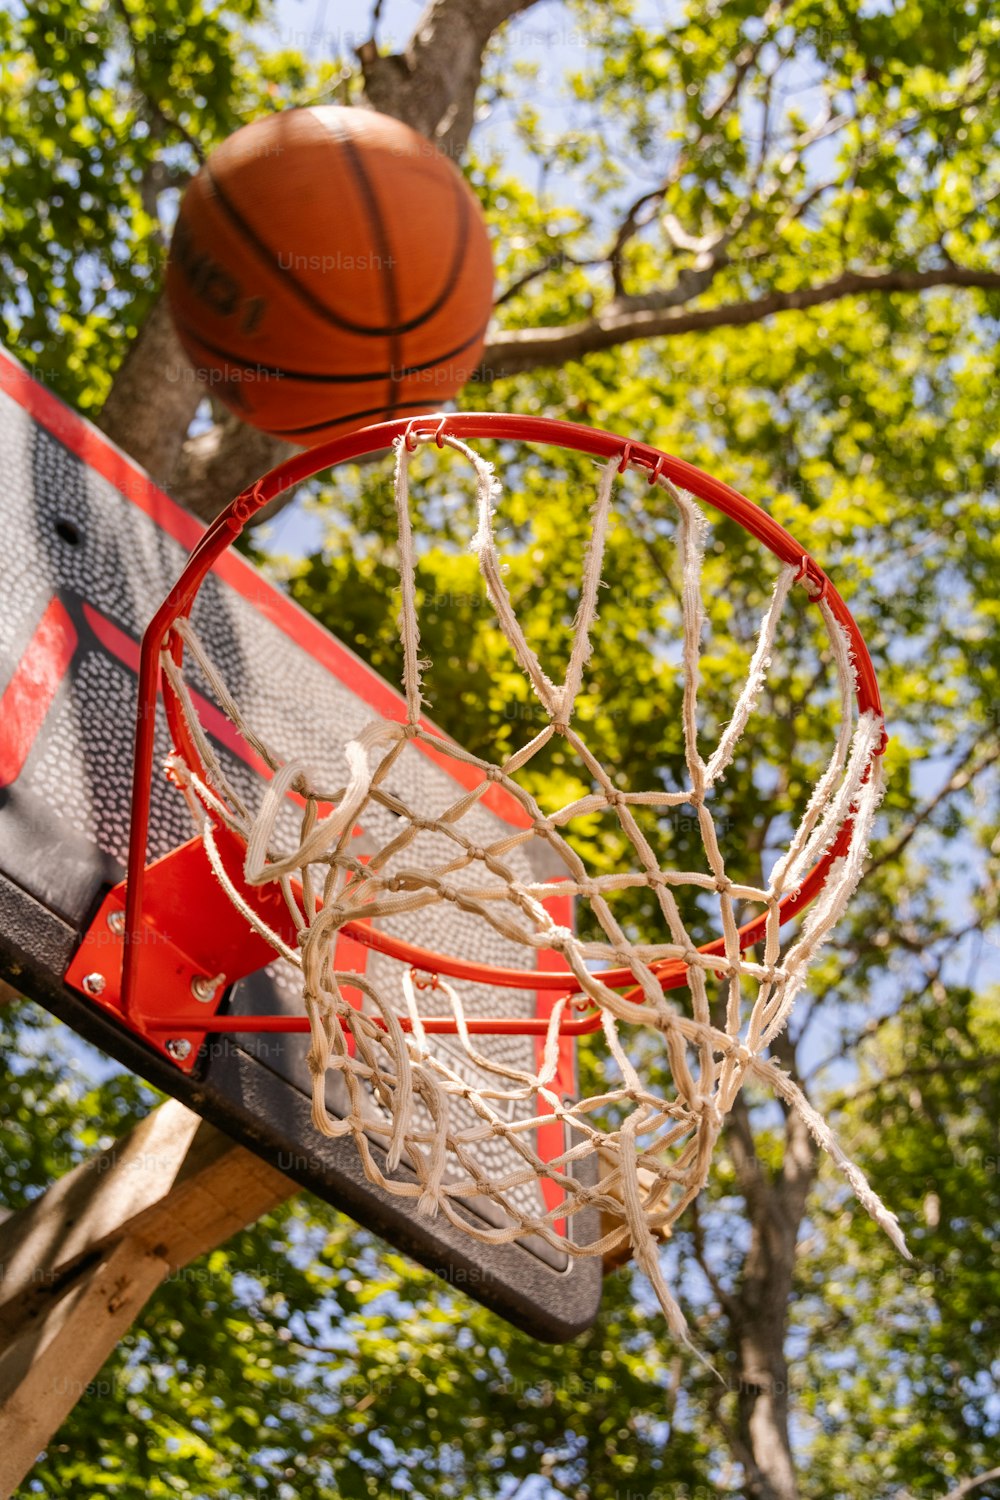 Ein Basketball, der durch das Netz eines Basketballkorbs geht